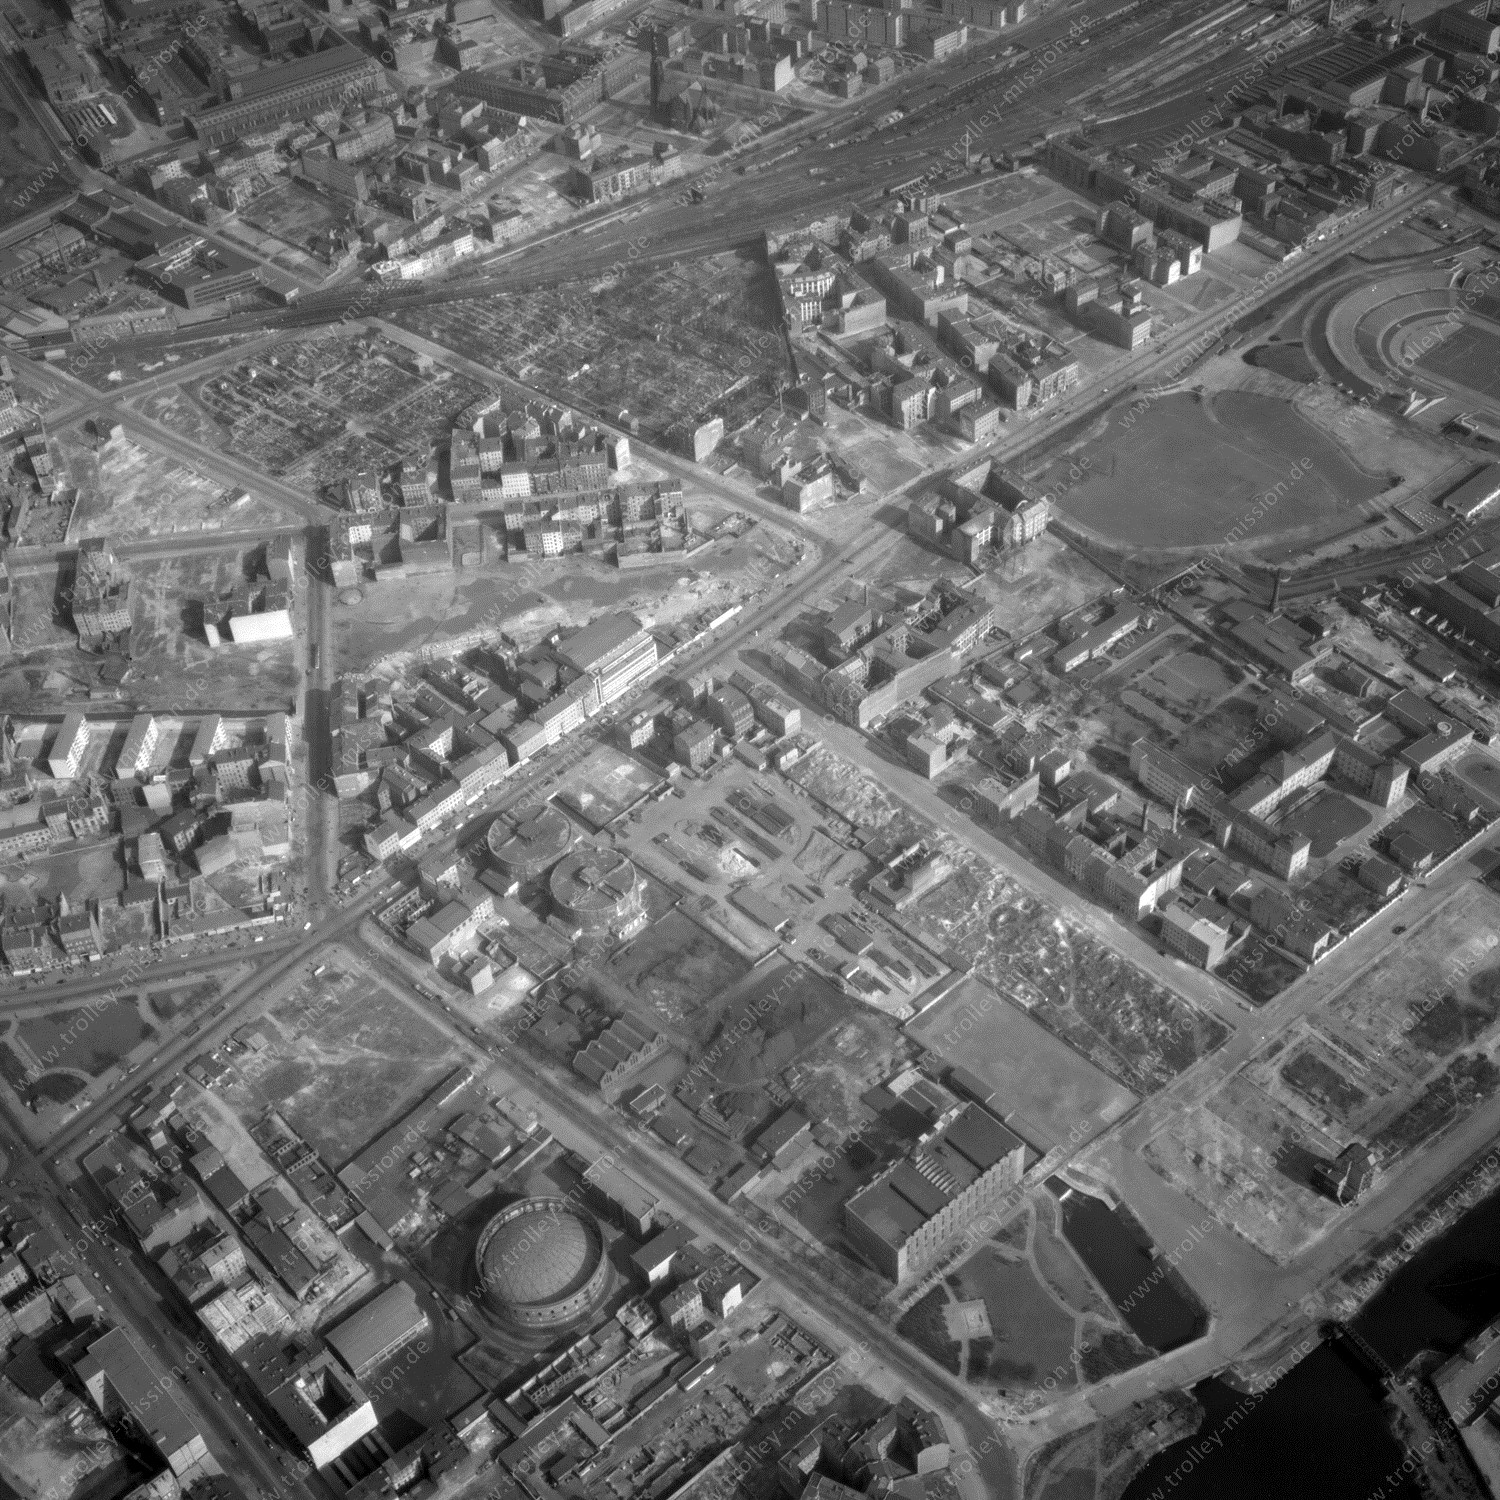 Alte Fotos und Luftbilder von Berlin - Luftbildaufnahme Nr. 01 - Historische Luftaufnahmen von West-Berlin aus dem Jahr 1954 - Flugstrecke Quebec